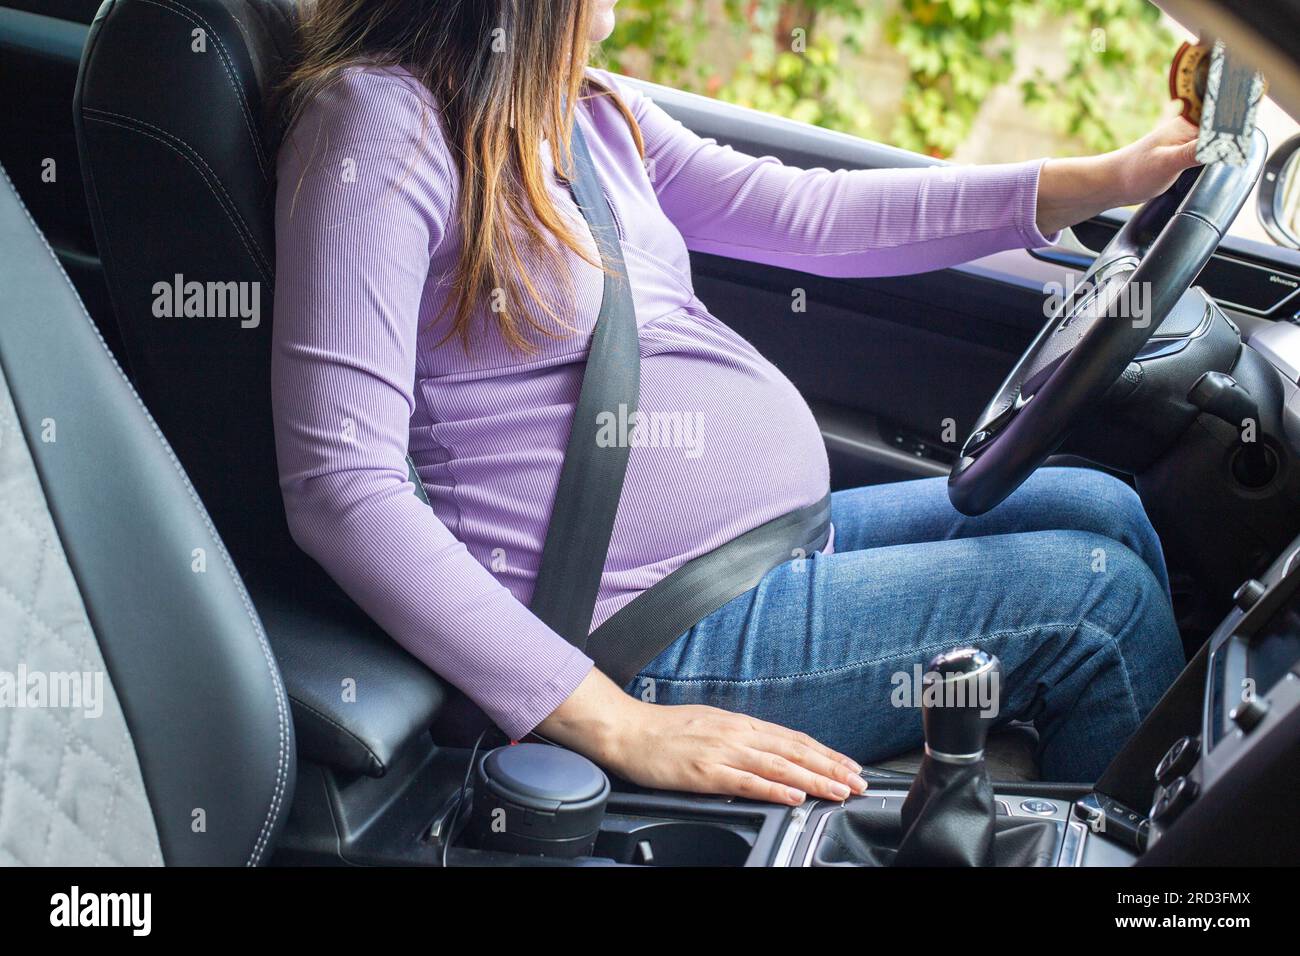 https://c8.alamy.com/compde/2rd3fmx/eine-schwangere-frau-die-einen-sicherheitsgurt-tragt-fahrt-ein-auto-sicherheit-und-verkehrstuchtigkeit-wahrend-der-schwangerschaft-reisen-und-fahrten-im-auto-wahrend-der-schwangerschaft-risiko-von-2rd3fmx.jpg